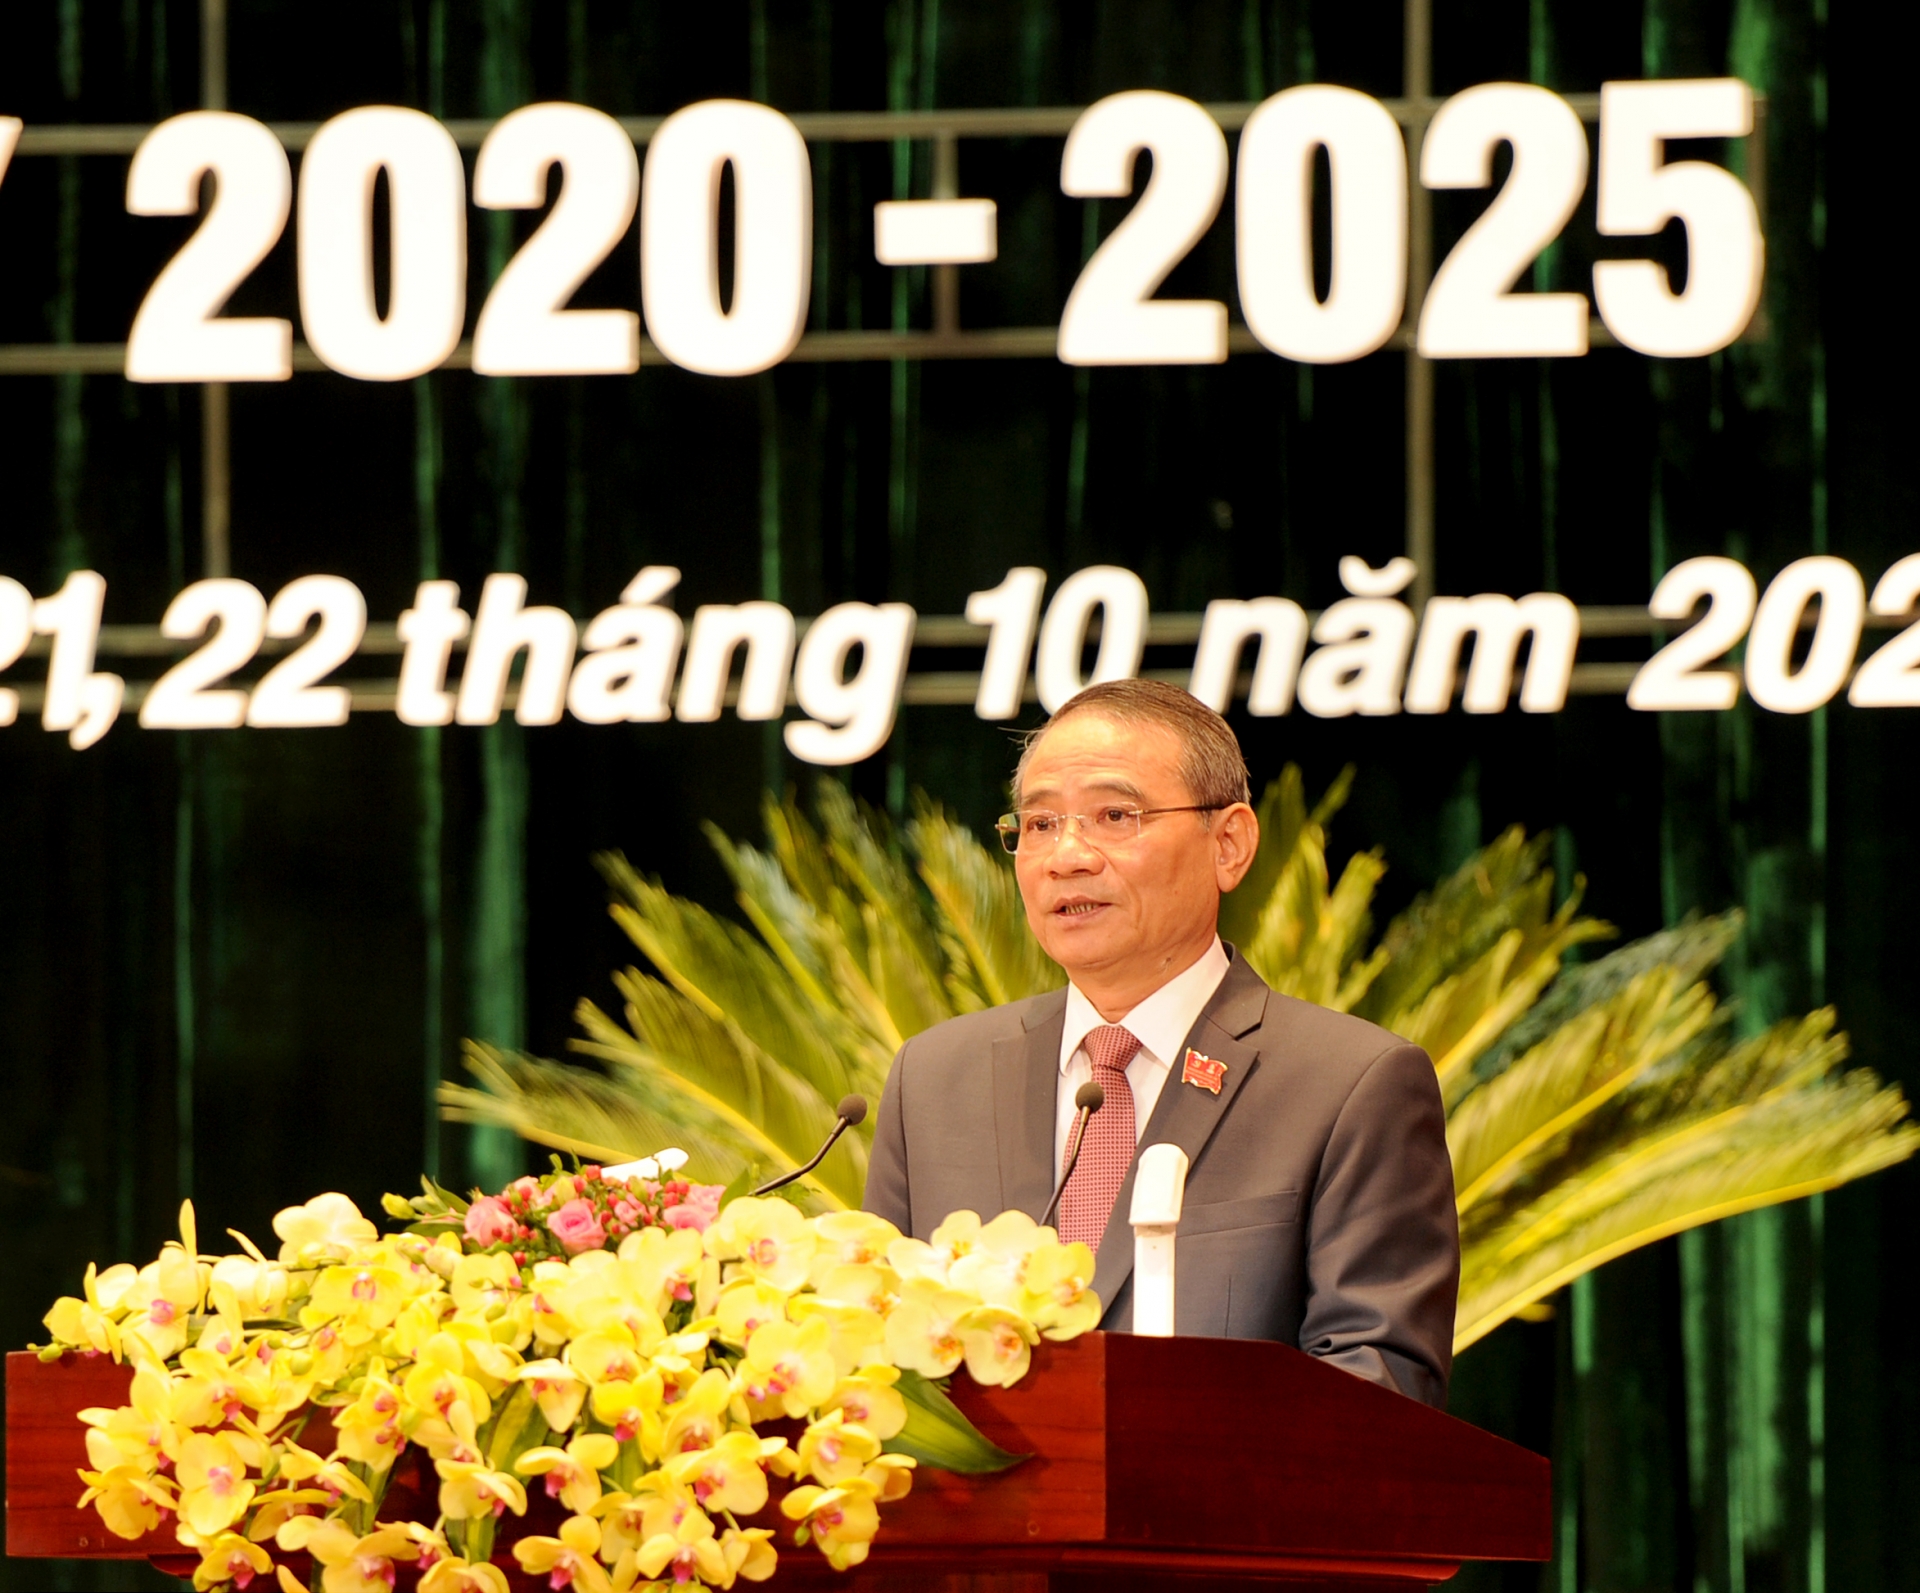 Đại hội đại biểu lần thứ XXII Đảng bộ thành phố Đà Nẵng nhiệm kỳ 2020-2025  (Phiên trù bị chiều ngày 20/10/2020)